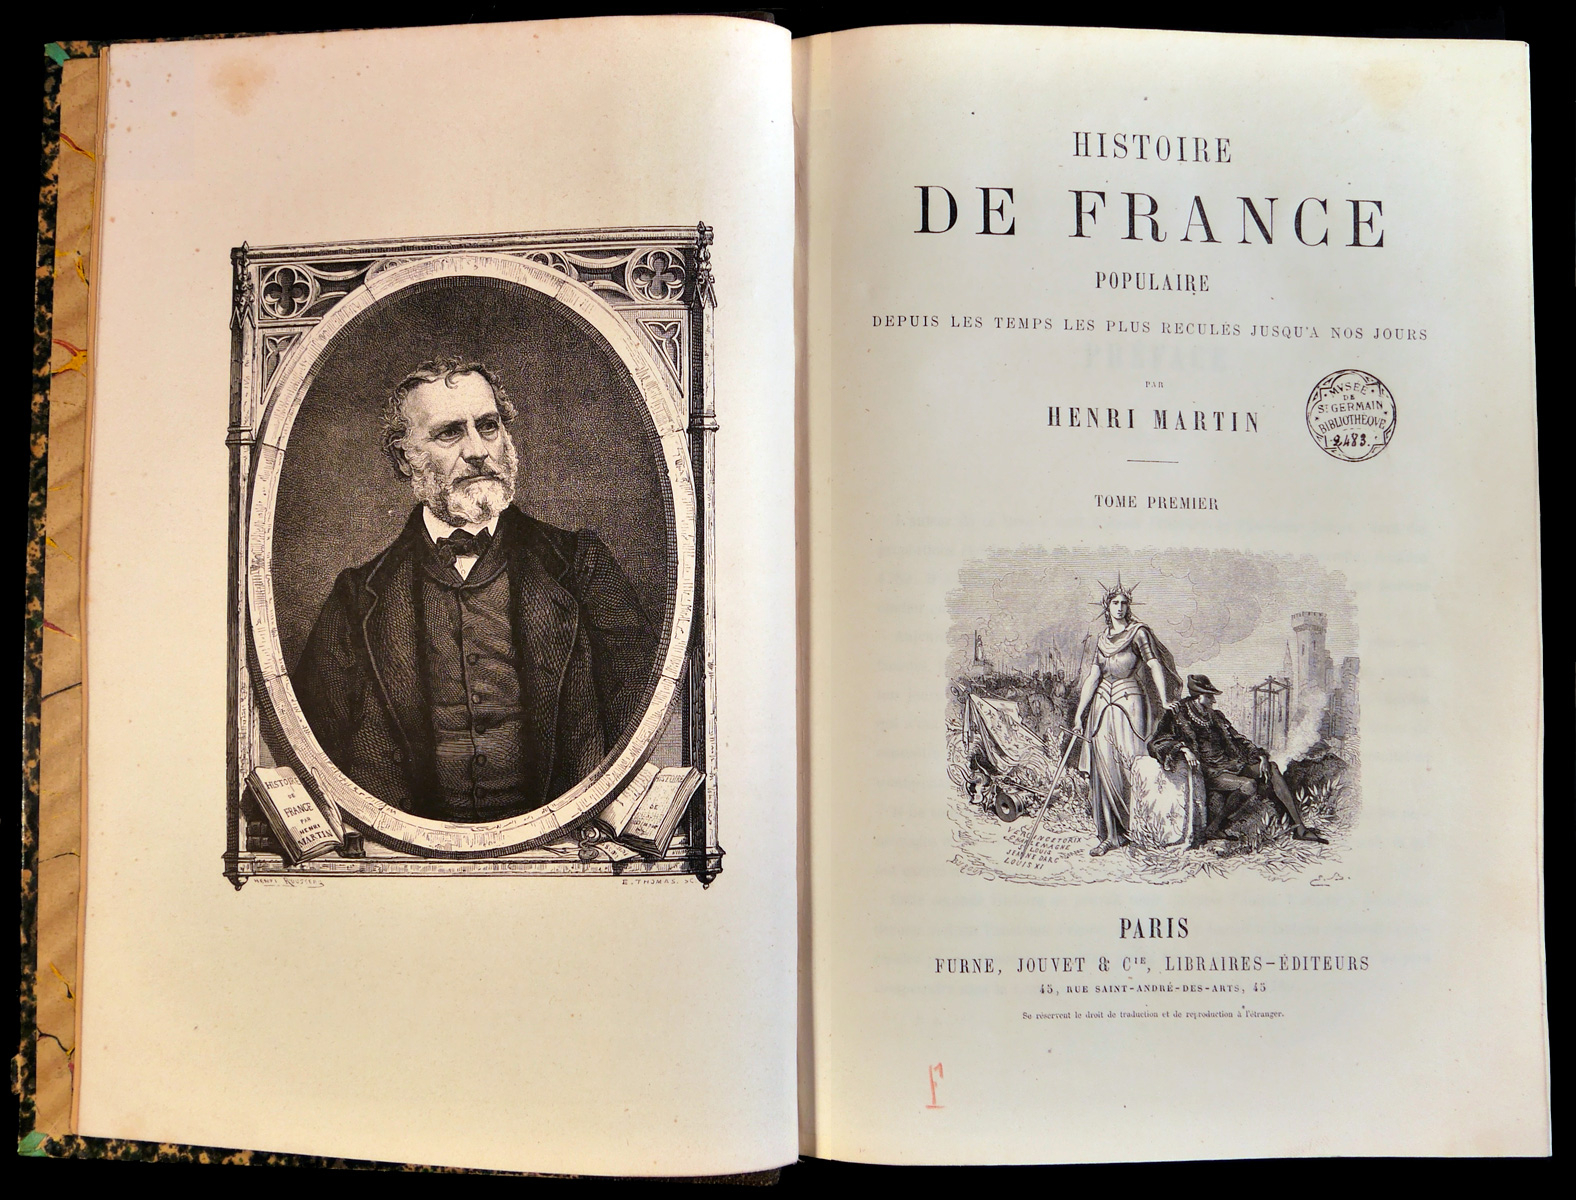 Page de garde de l'ouvrage Histoire de France populaire rédigé par Henri Martin et accompagné de son buste